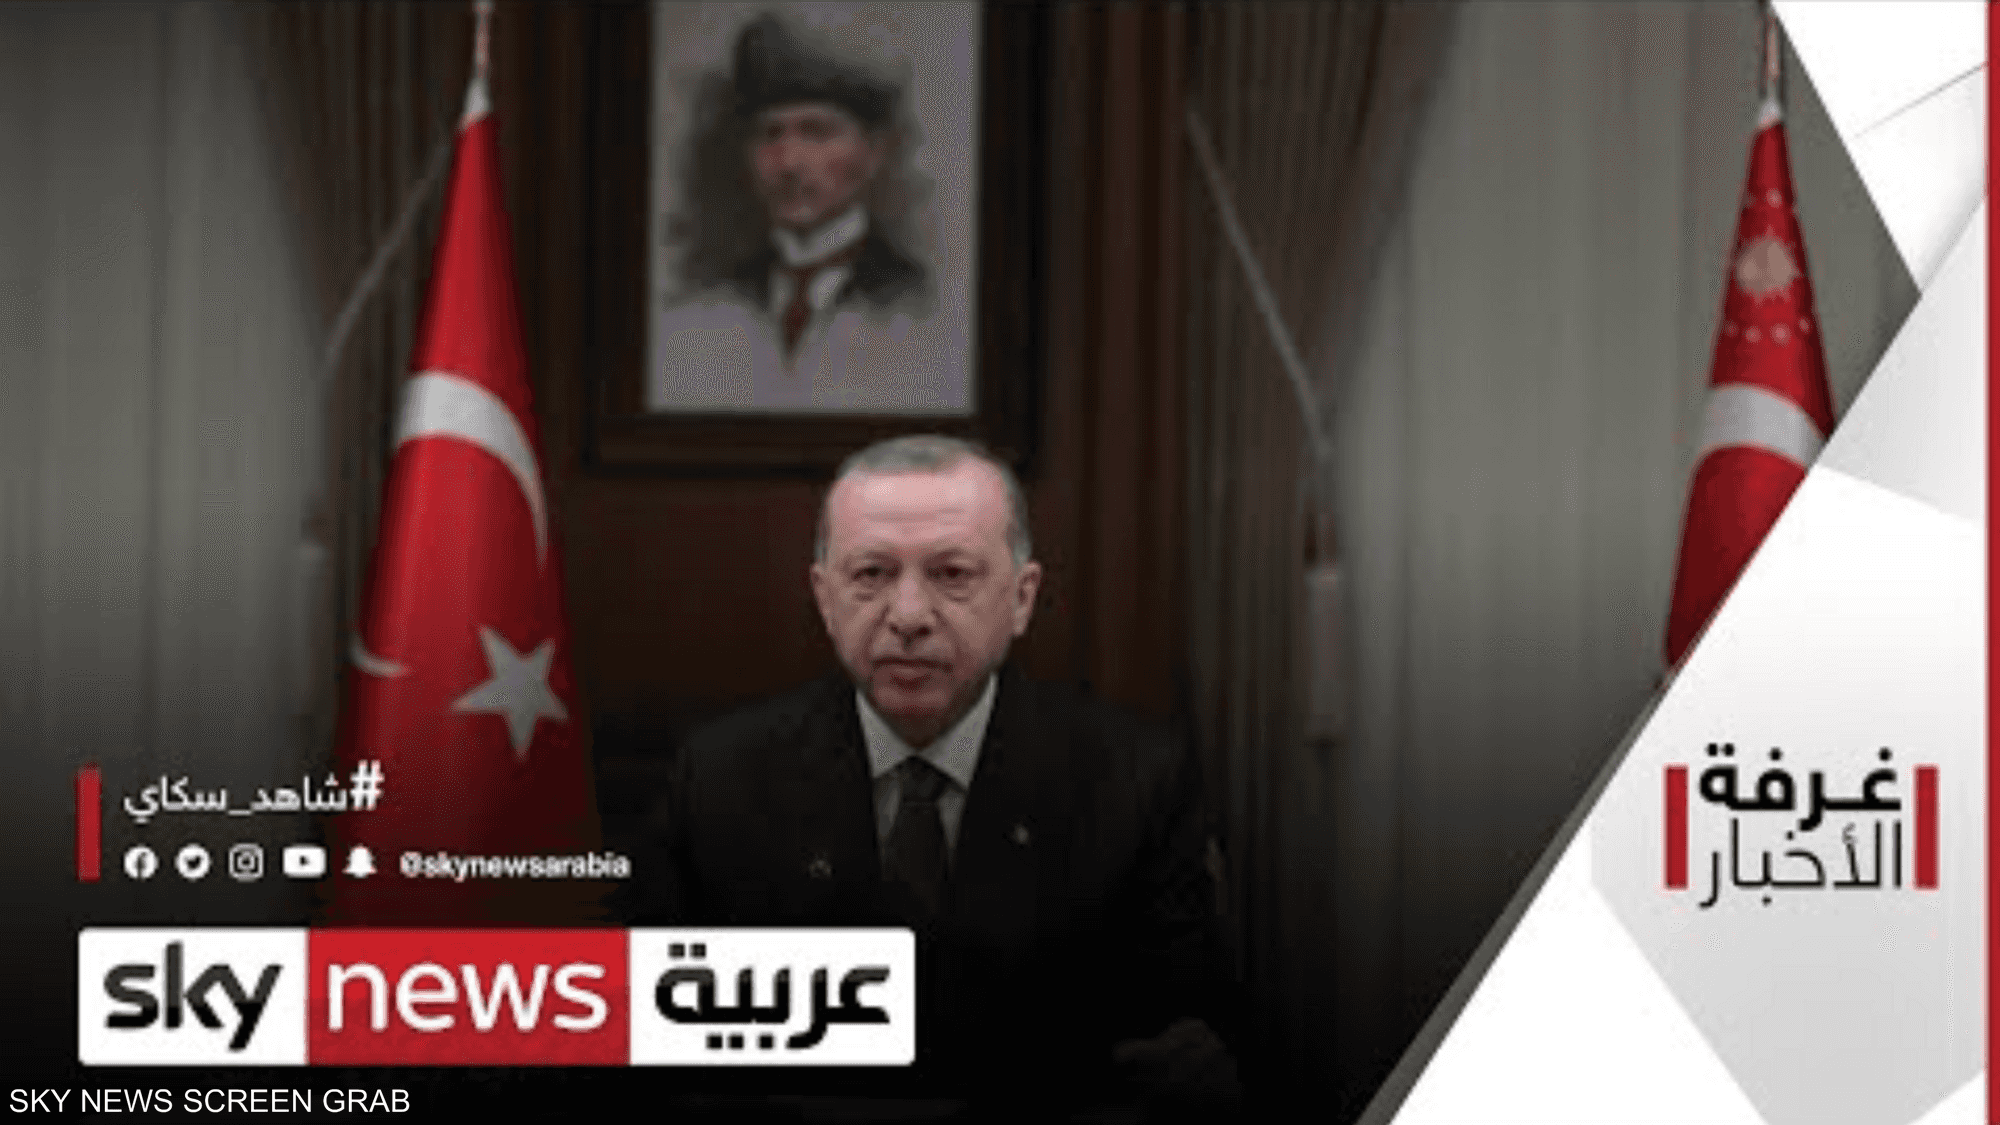 تركيا تصعّد تجاه الاتحاد الأوروبي بعد التلويح بعقوبات